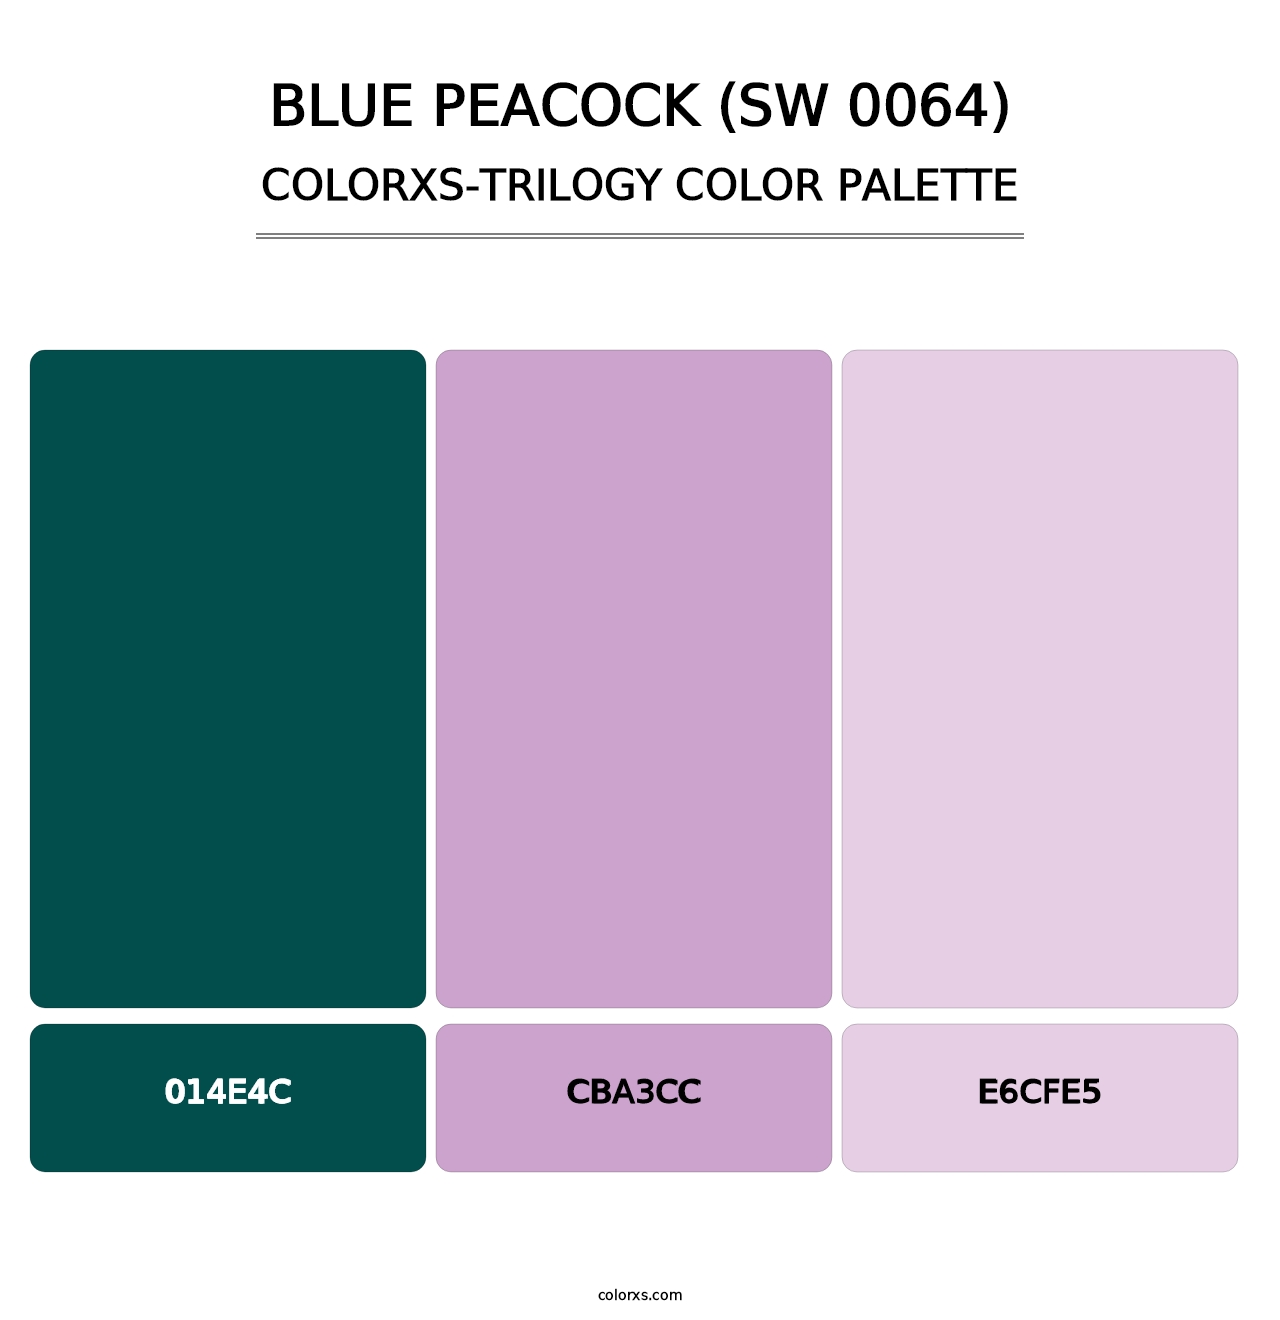 Blue Peacock (SW 0064) - Colorxs Trilogy Palette